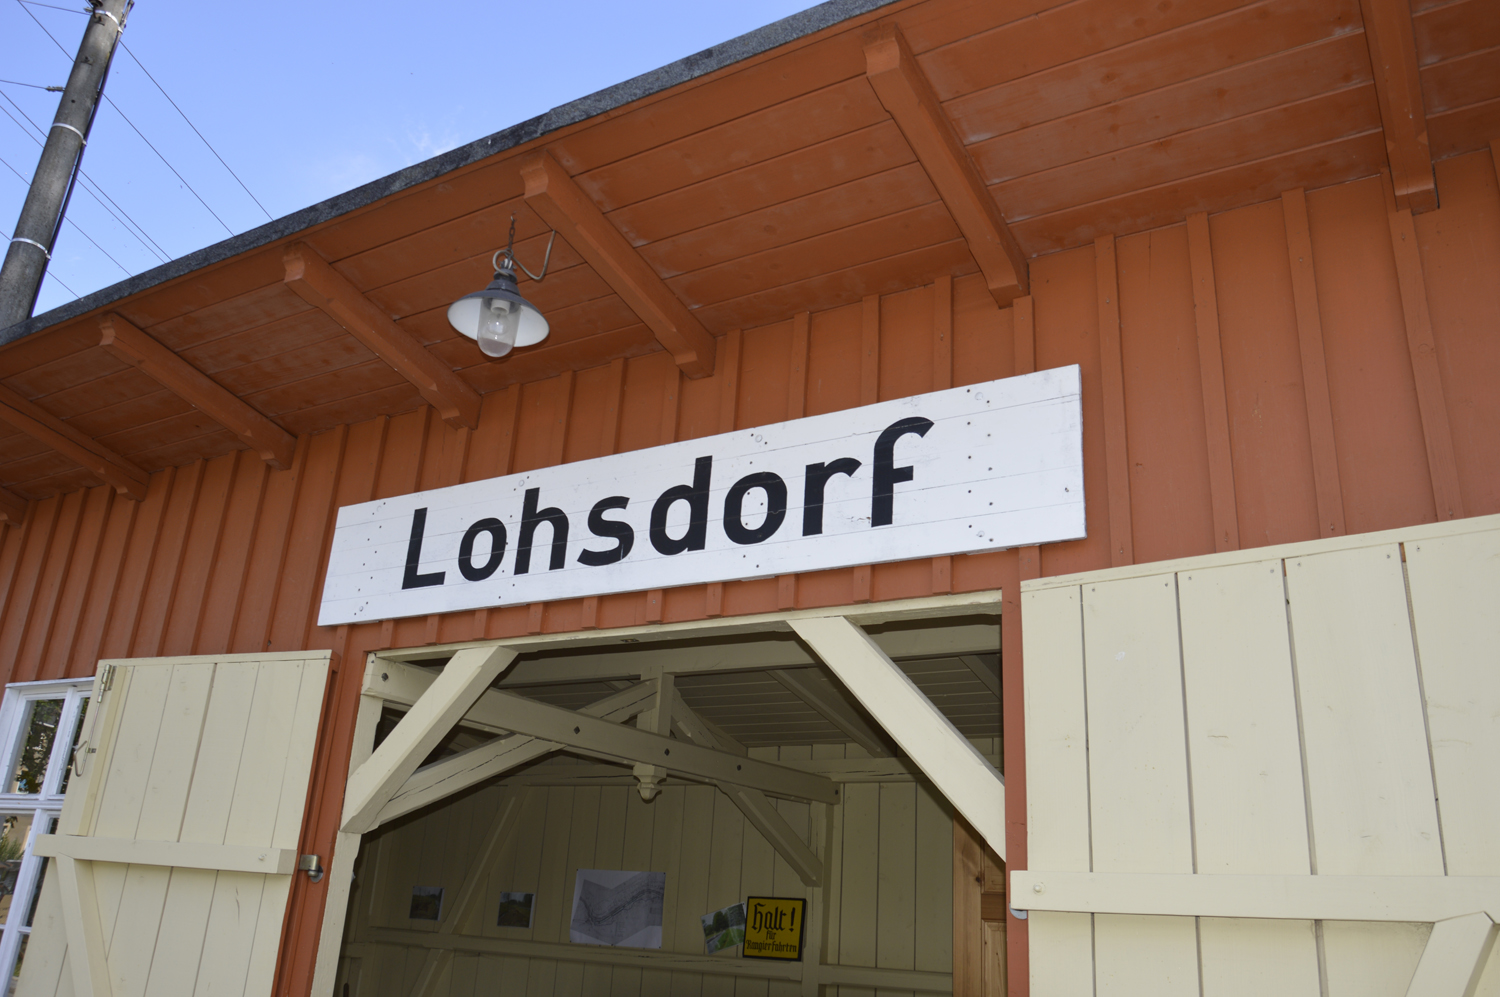 Bahnhofsgebude in Lohsdorf, Bahnhof der Schwarbachbahn